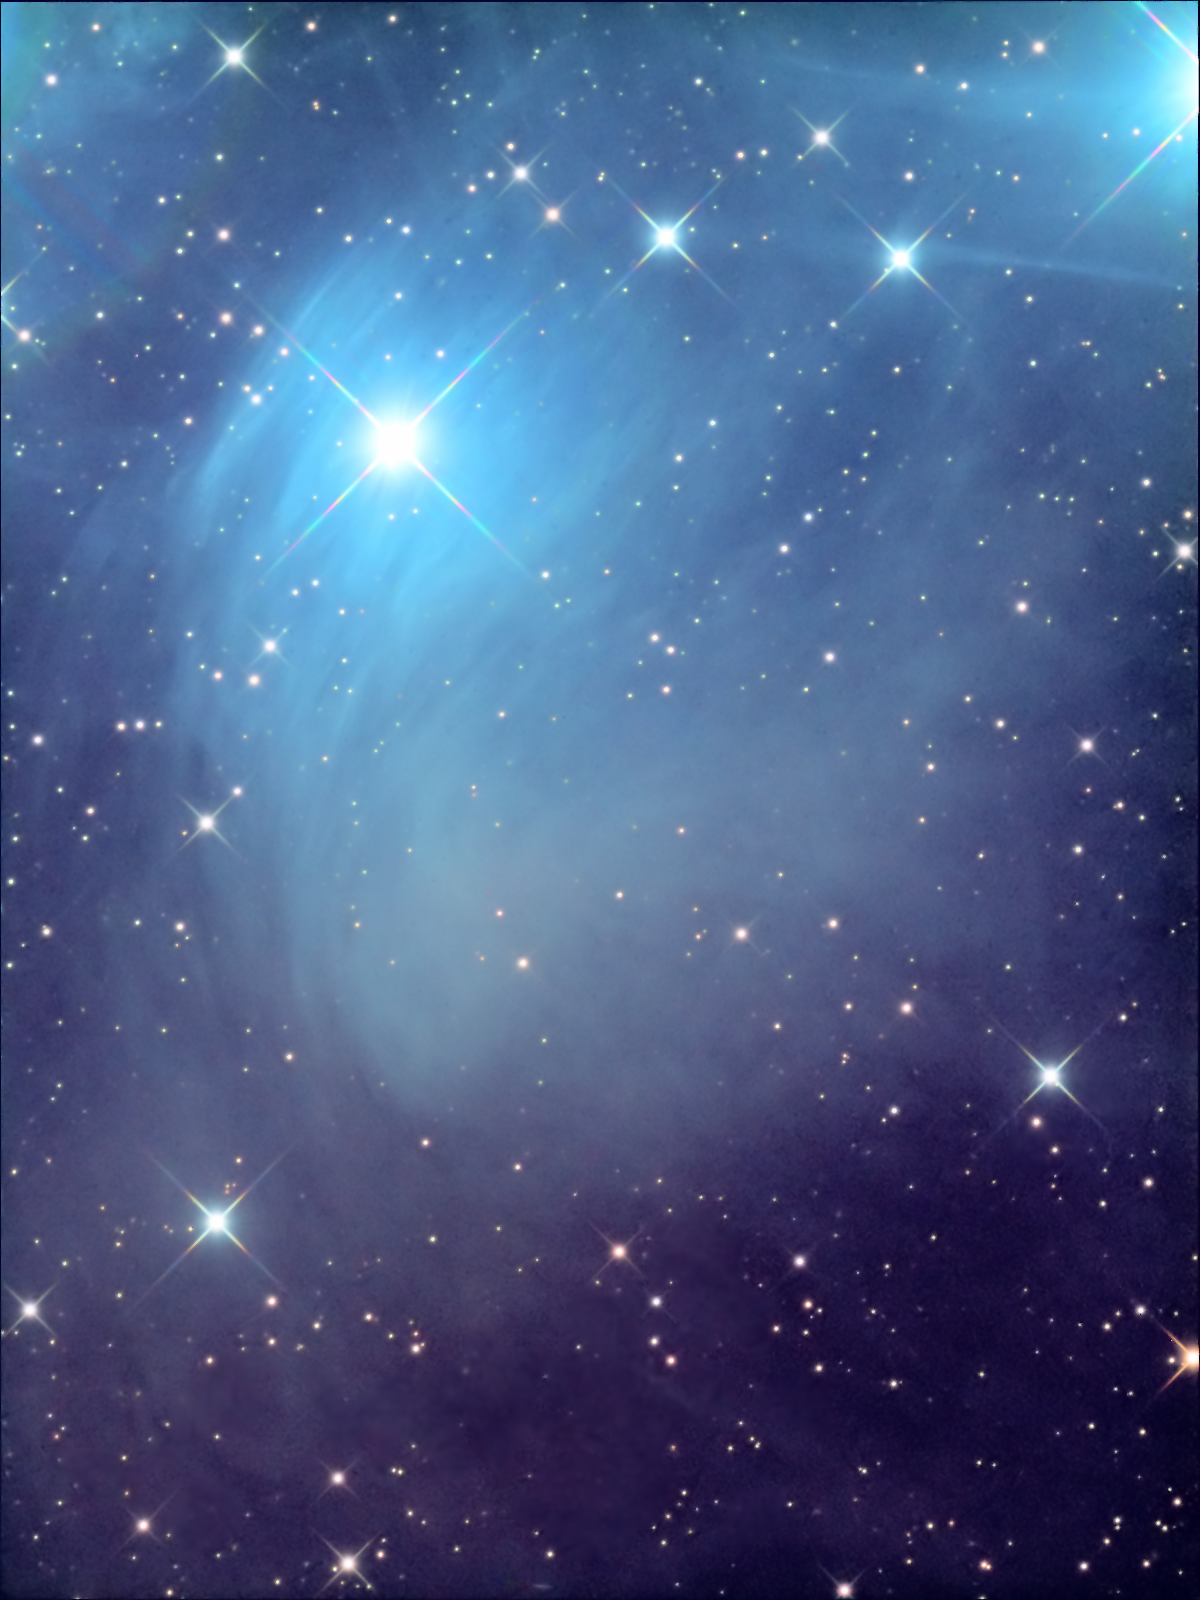 NGC 1435 - Merope Nebula